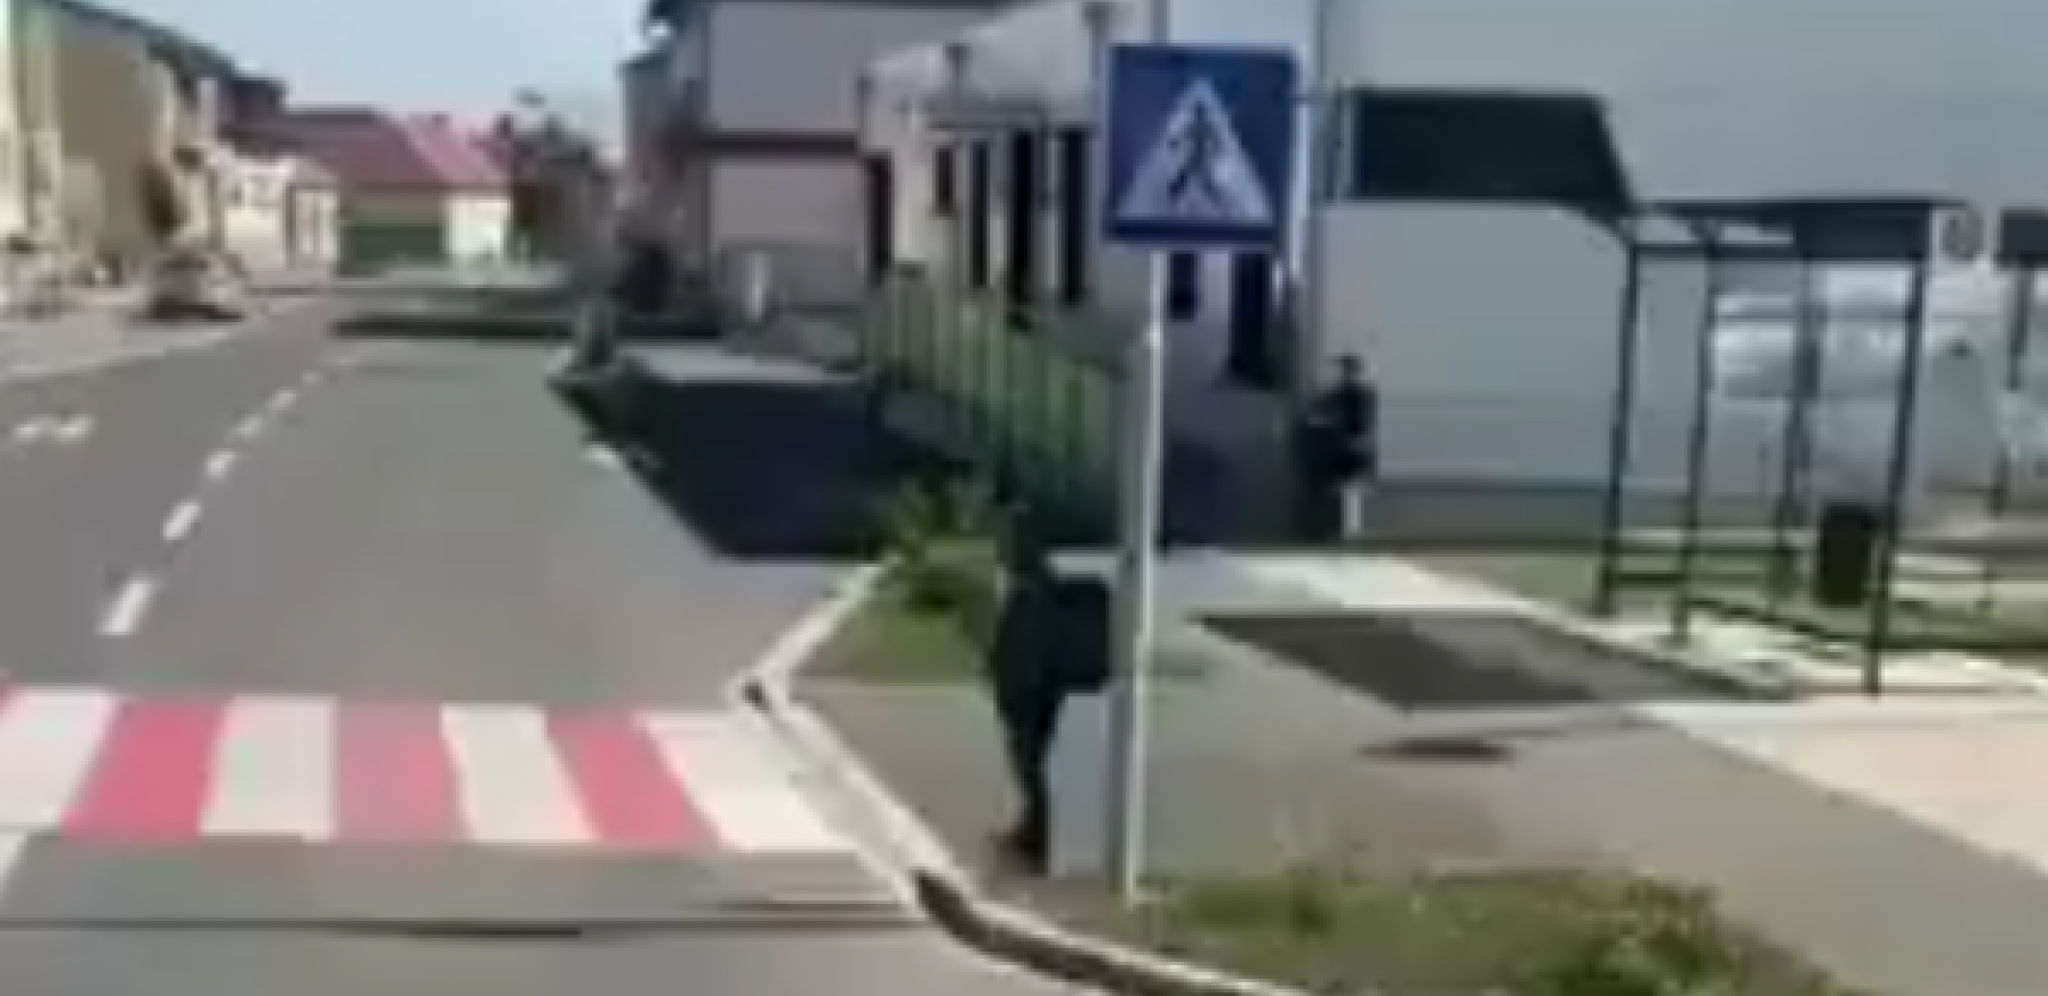 "PA NIJE... OVO JE..." Srbin ostao u potpunom šoku, urenbesna scena na pešačkom prelazu (VIDEO)